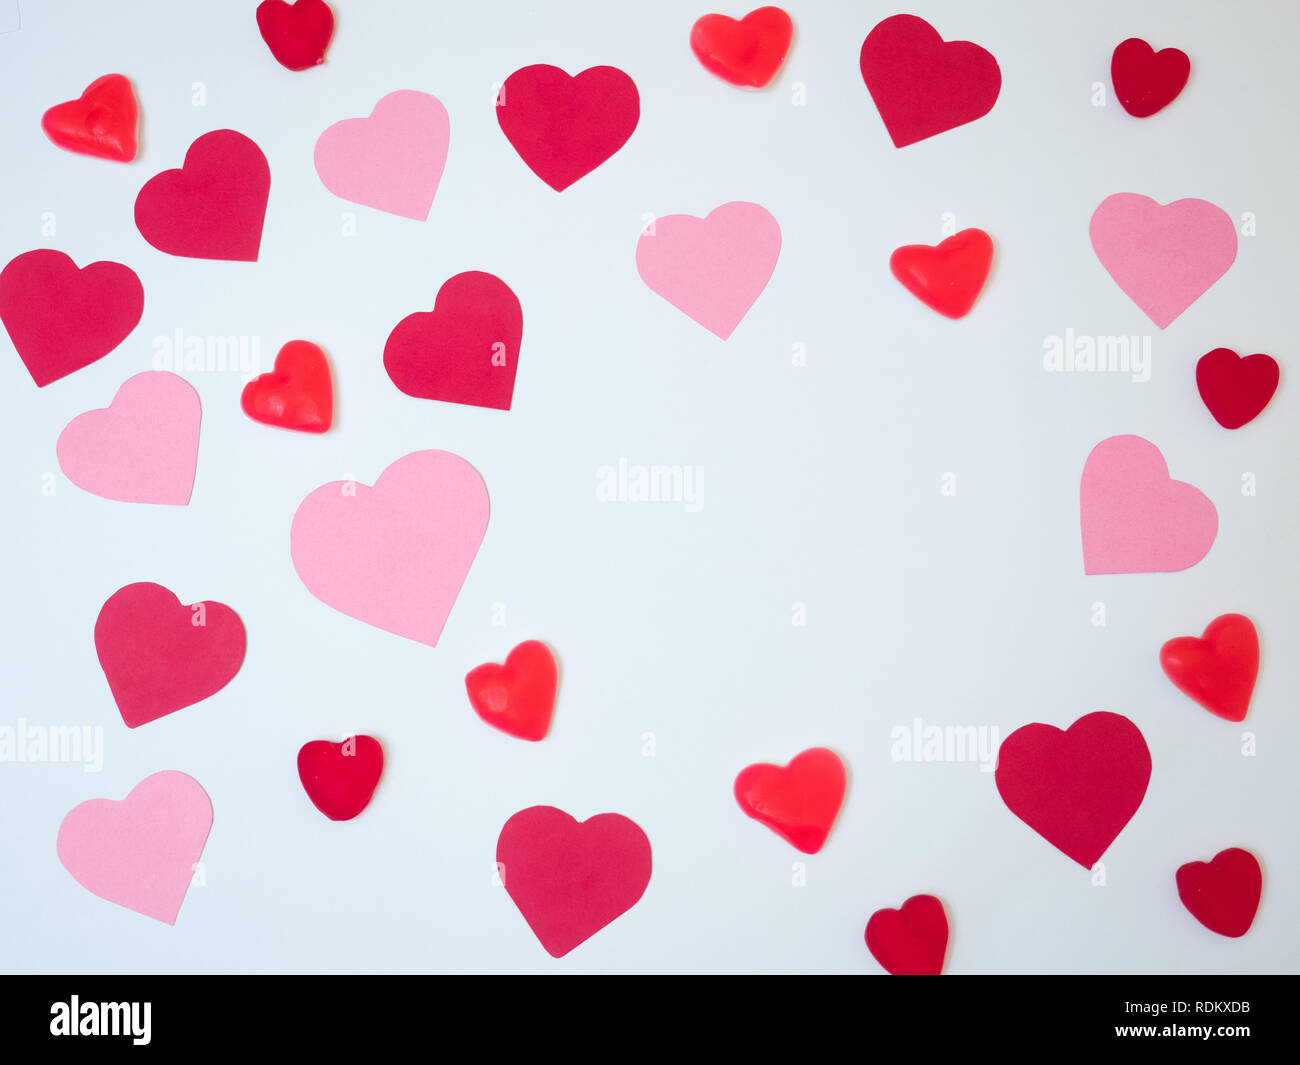 San Valentin carte décoration faite avec des coeurs en papier rouge et rose. Carte-cadeau. Banque D'Images